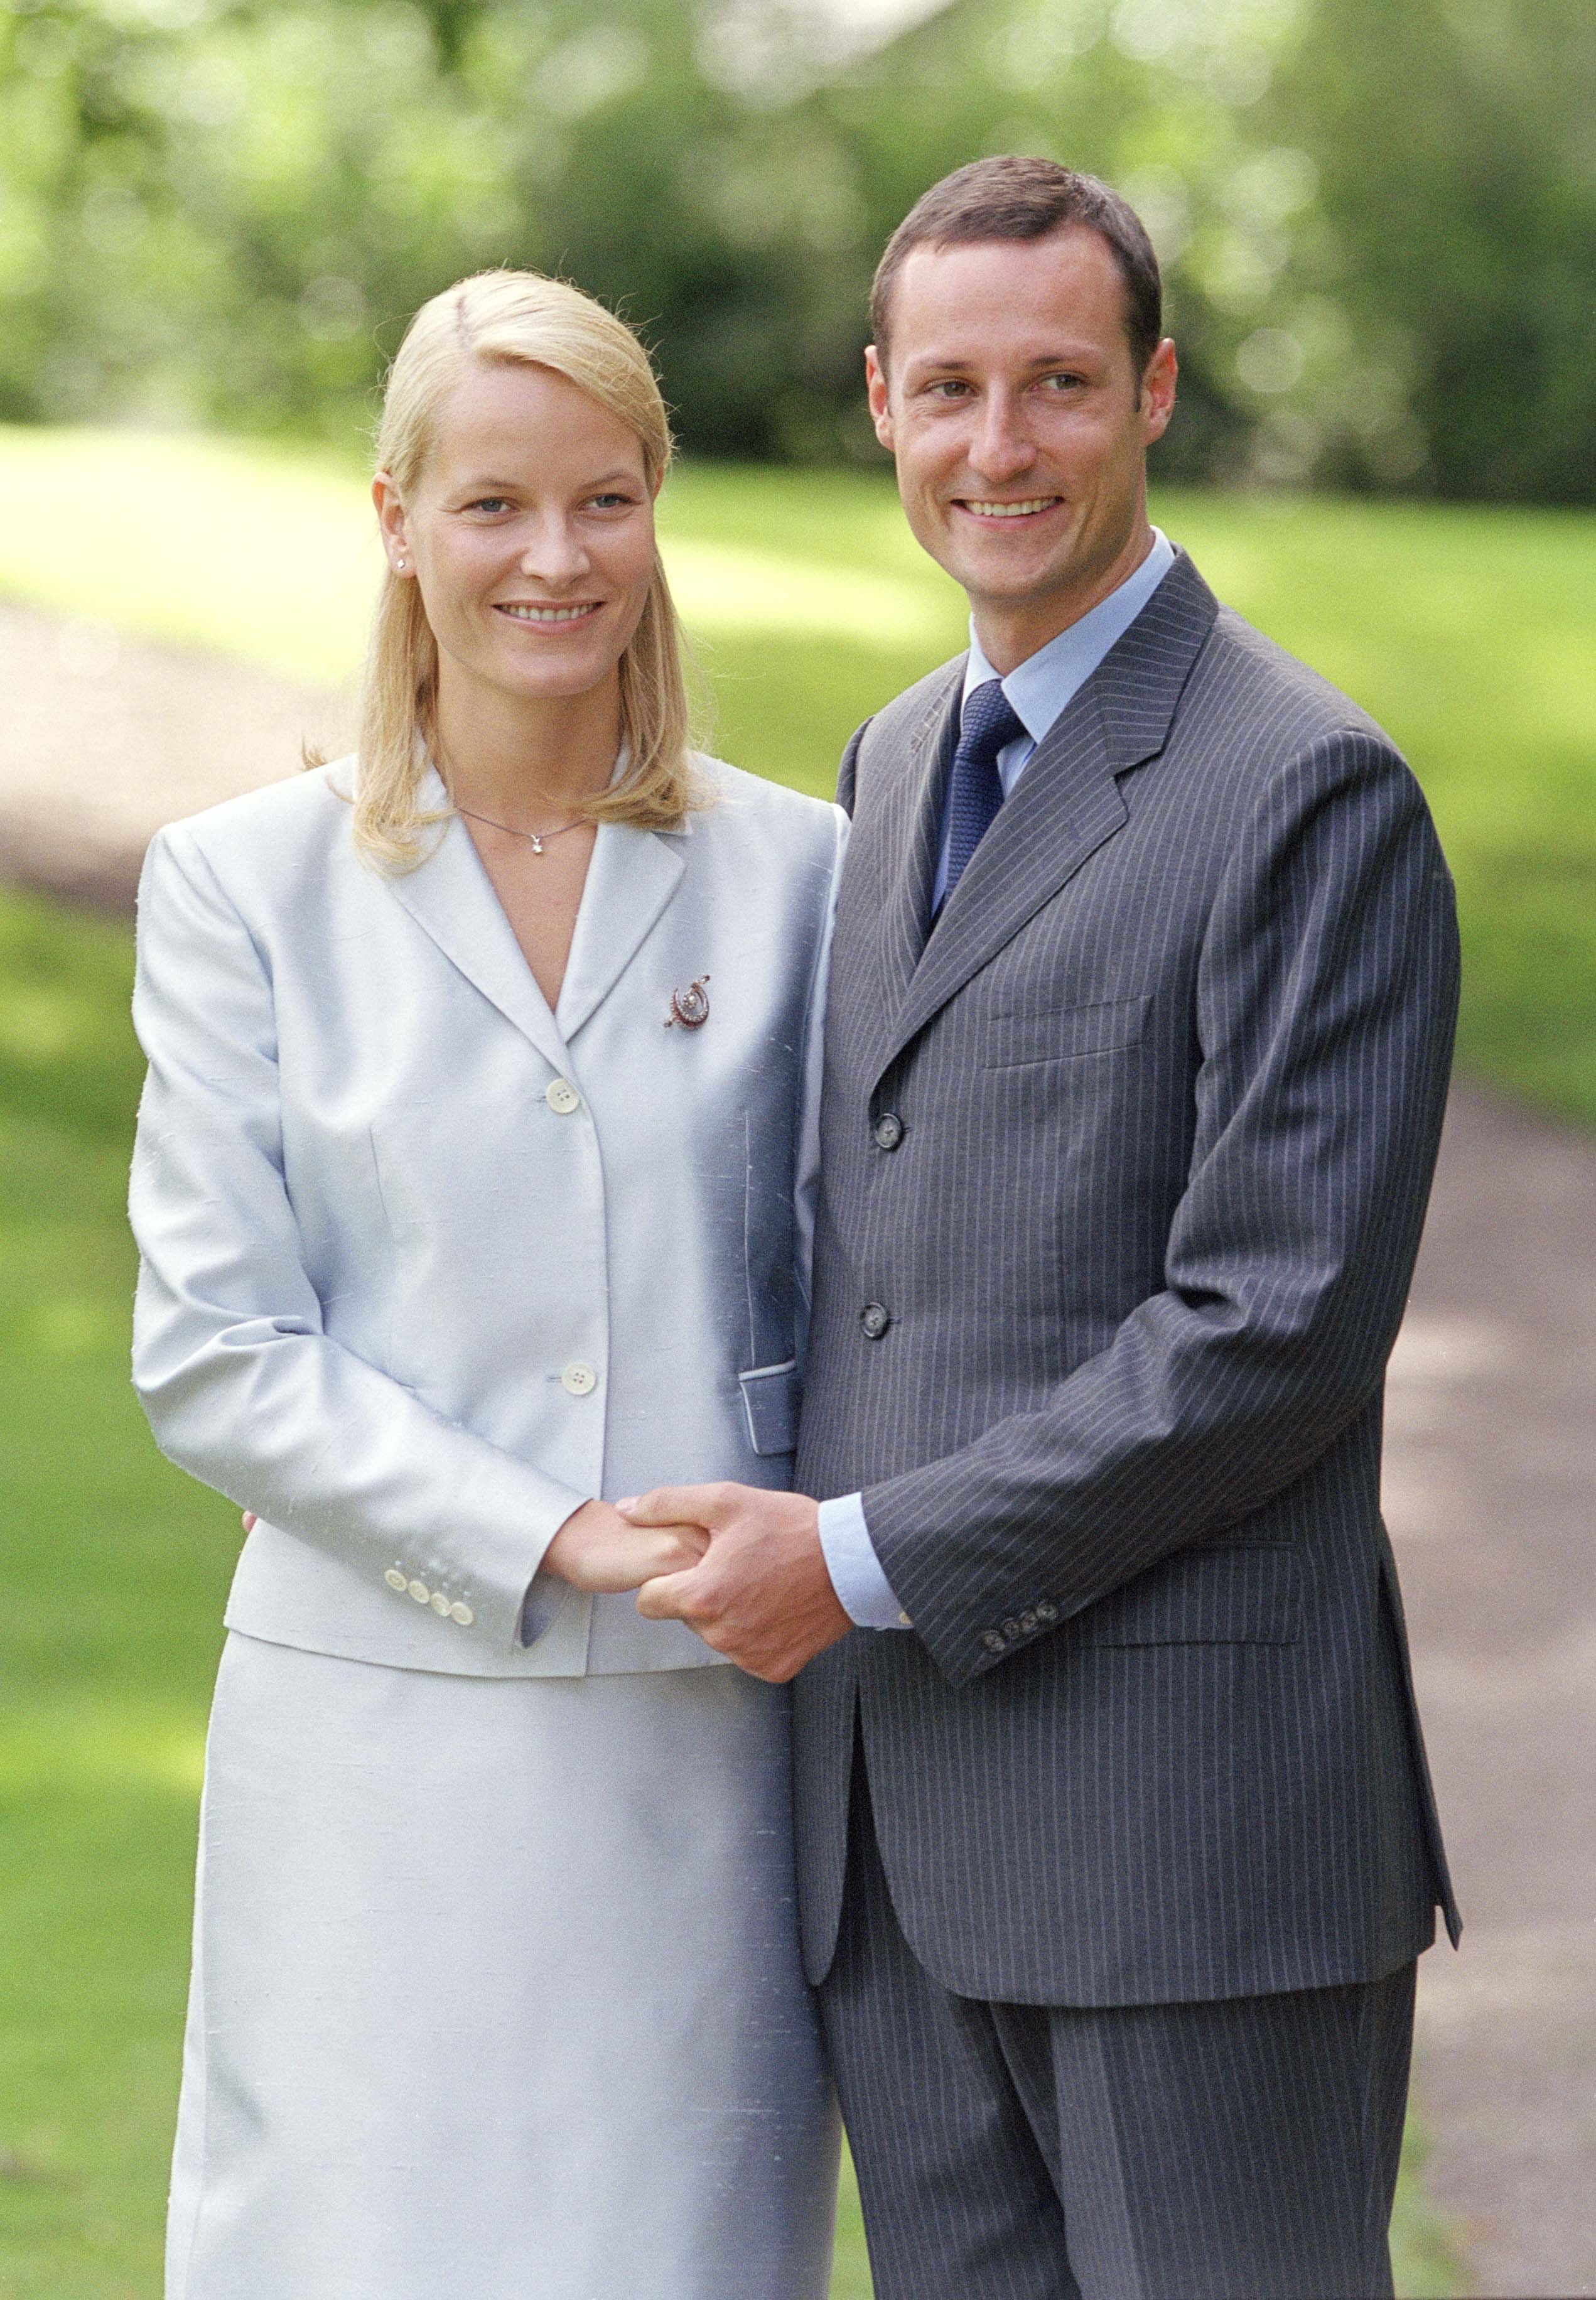 Mette-Marit és Haakon herceg